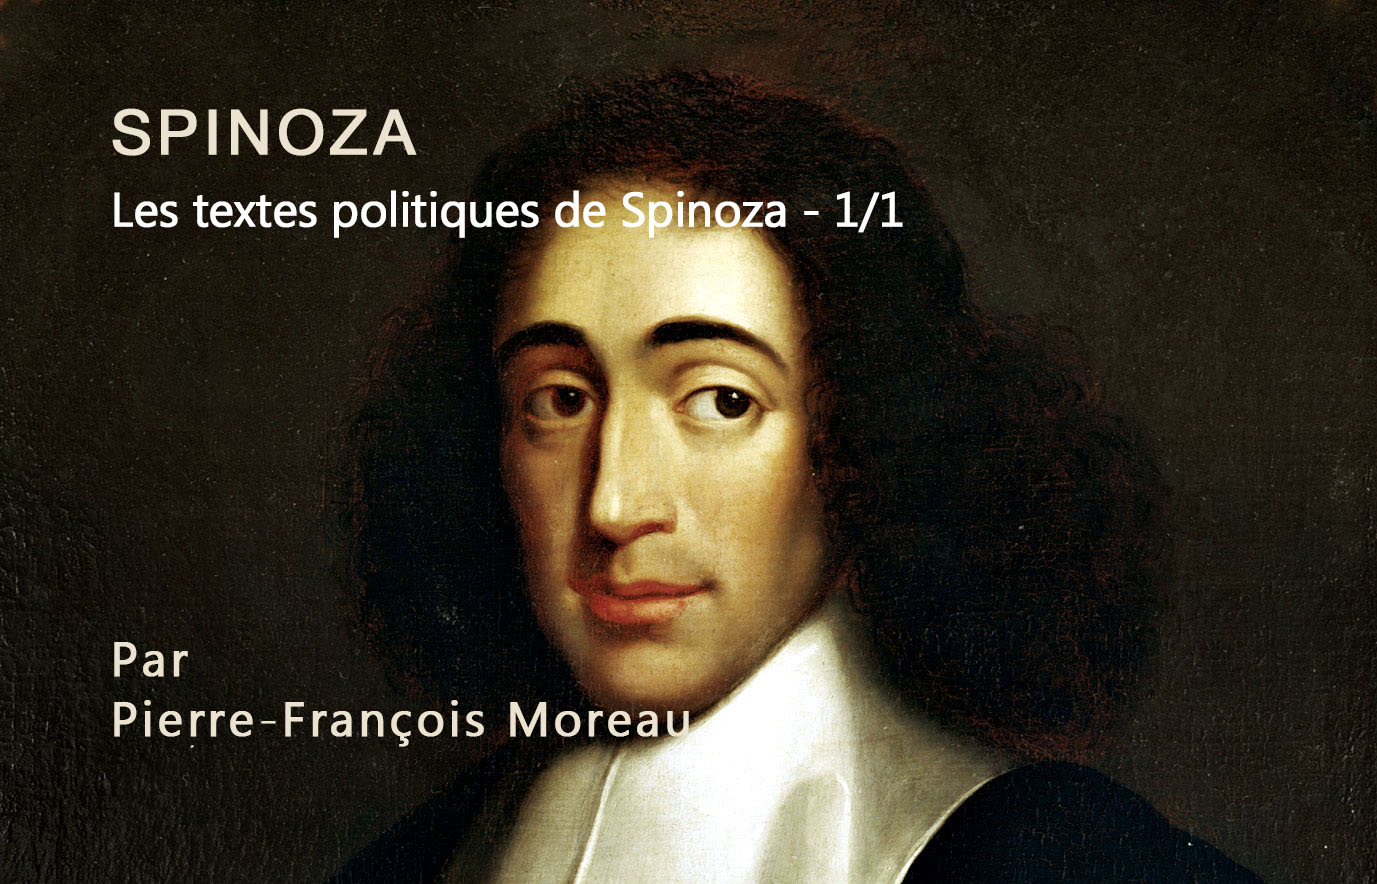 Les textes politiques de Spinoza - 1/1